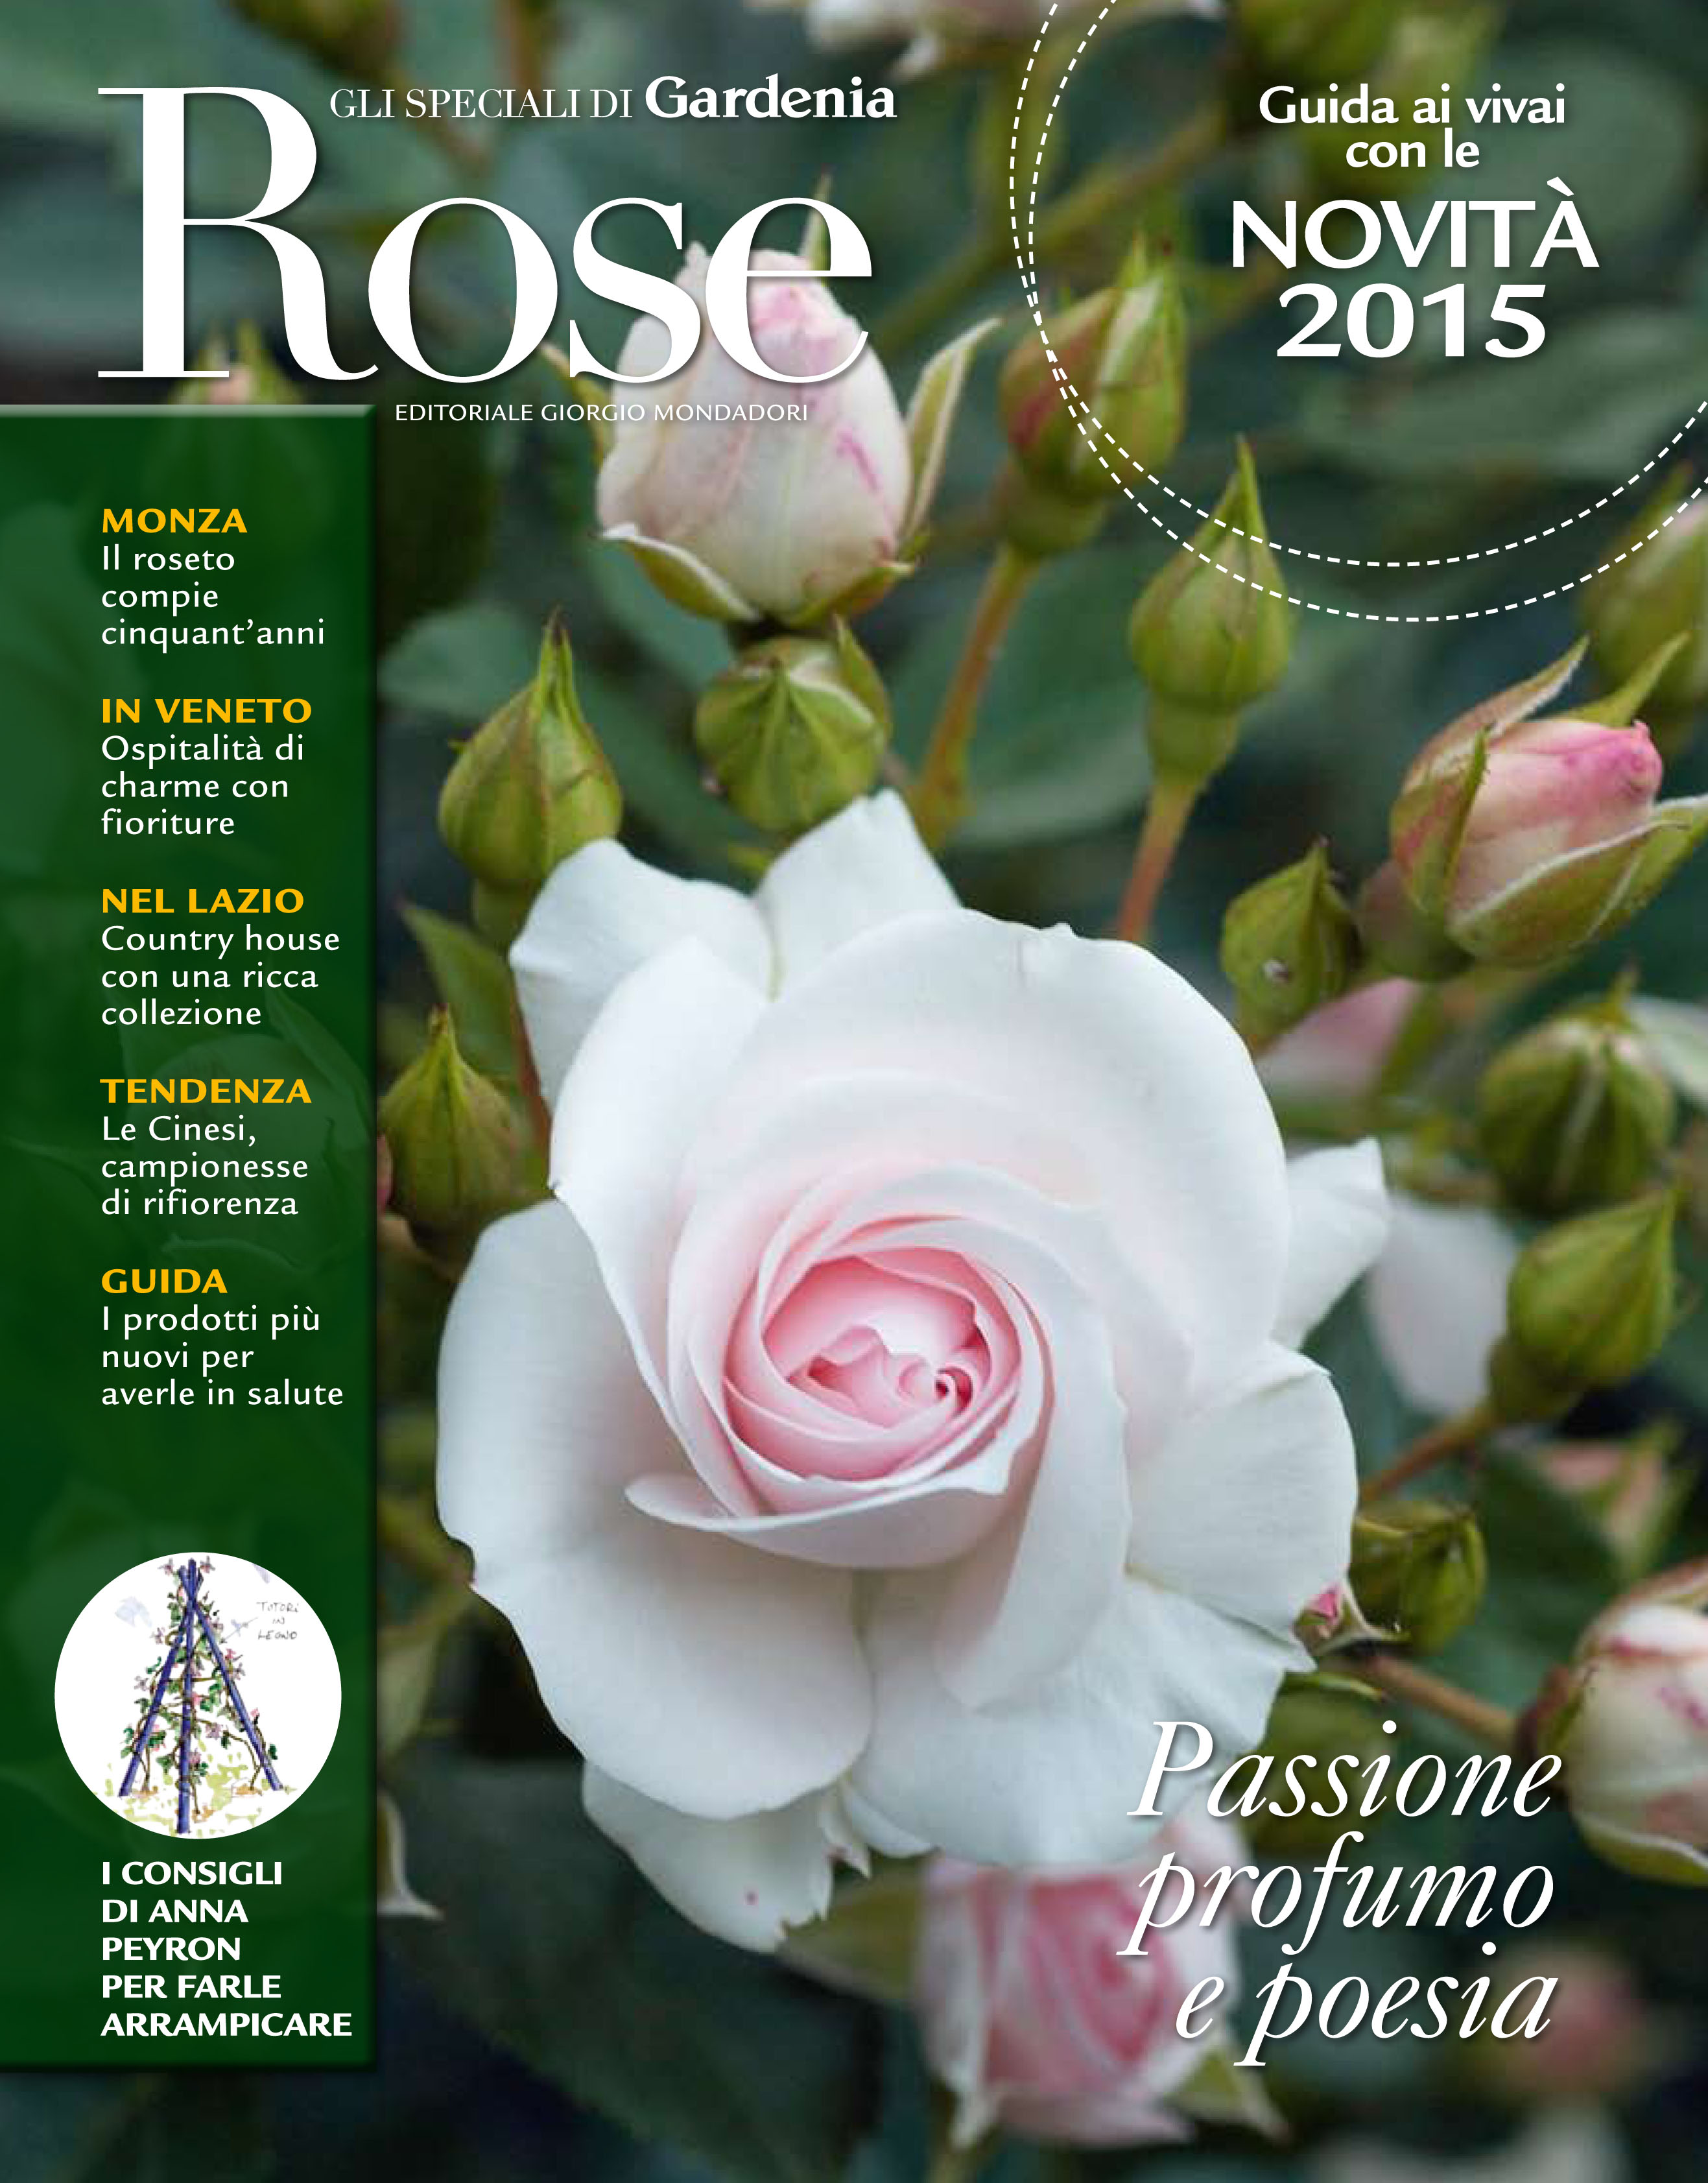 Gardenia October 2014 – Casacocò review